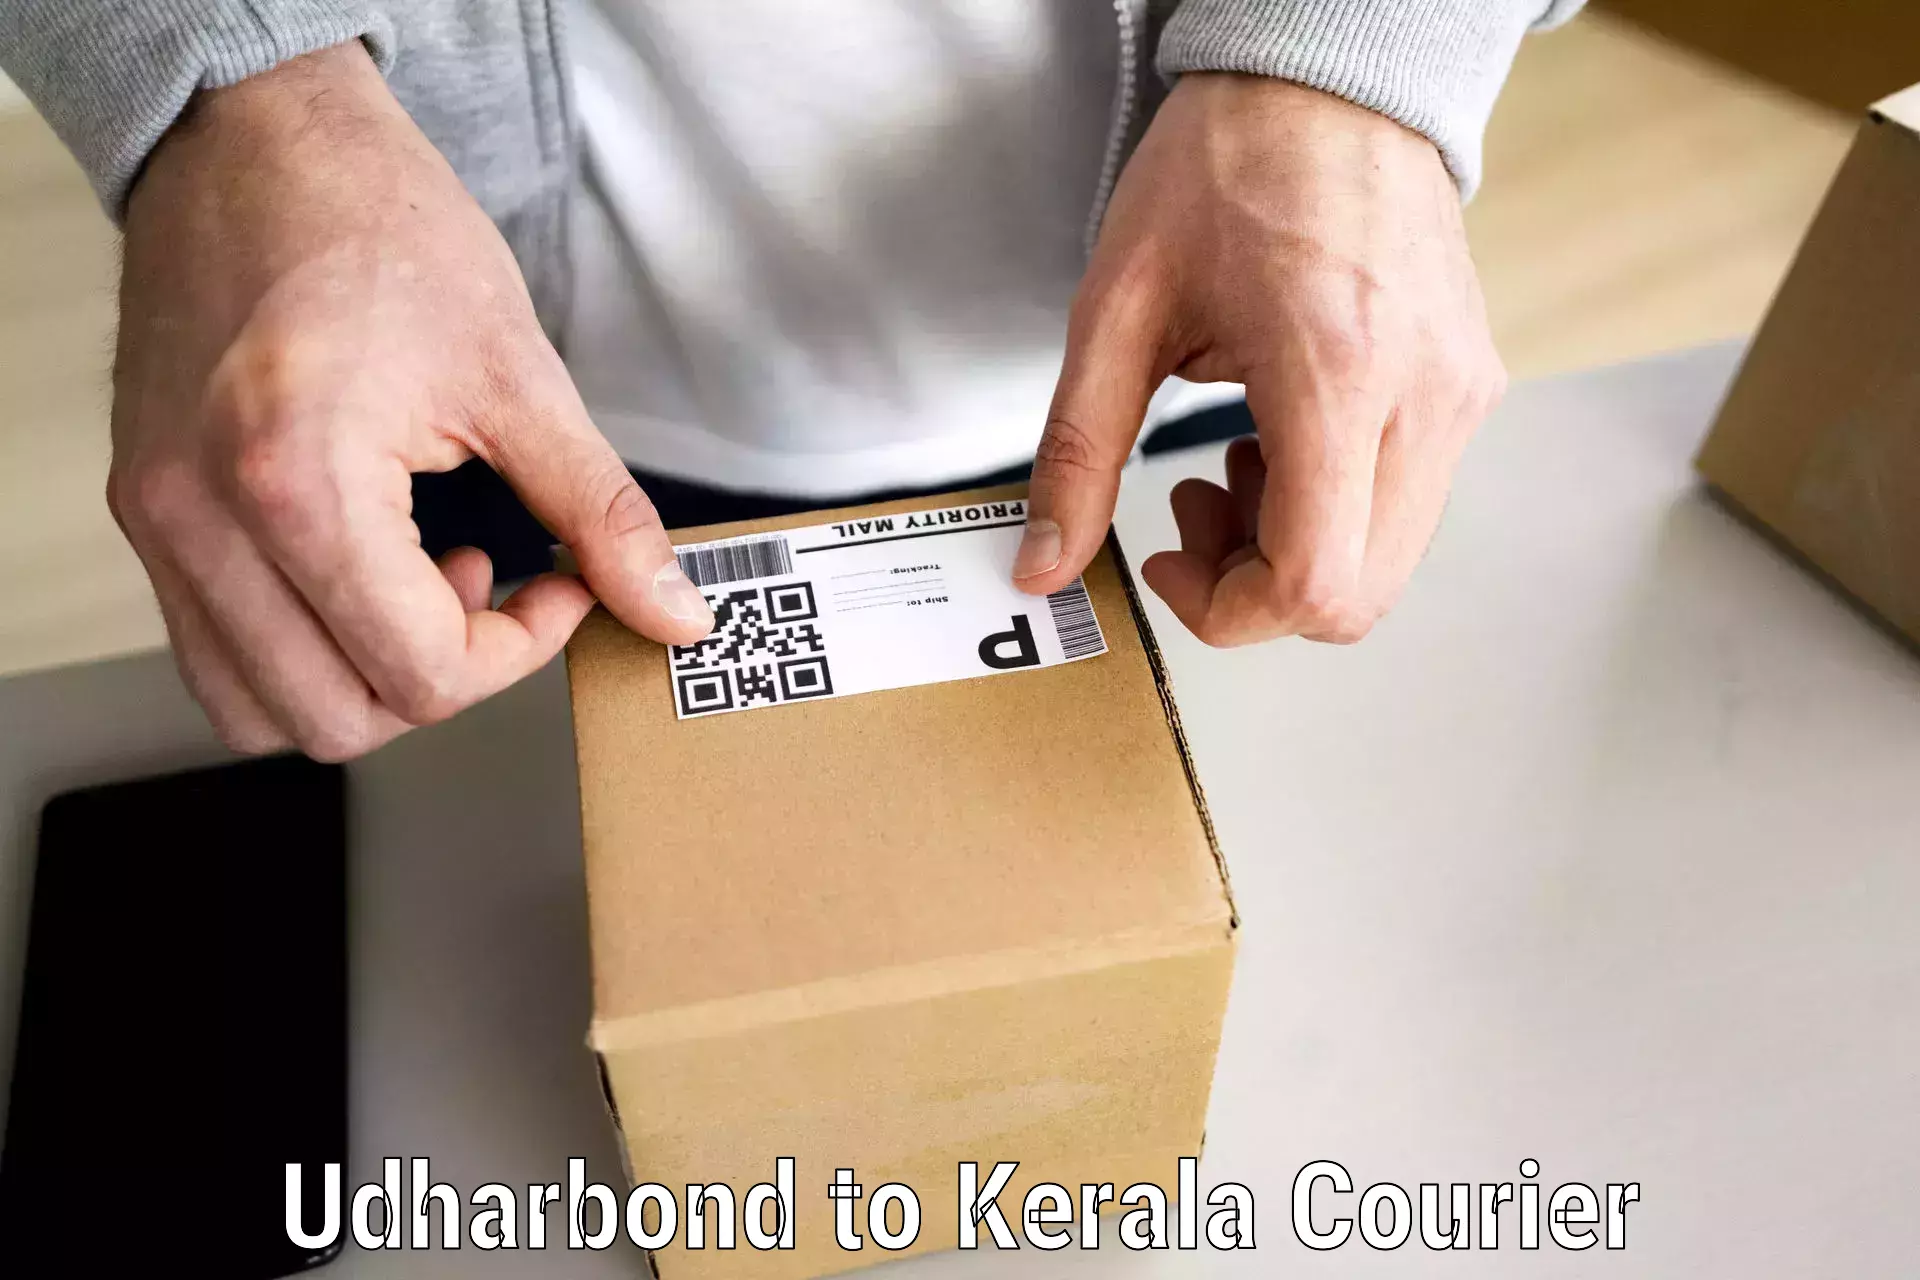 Trusted household movers Udharbond to Kallikkad